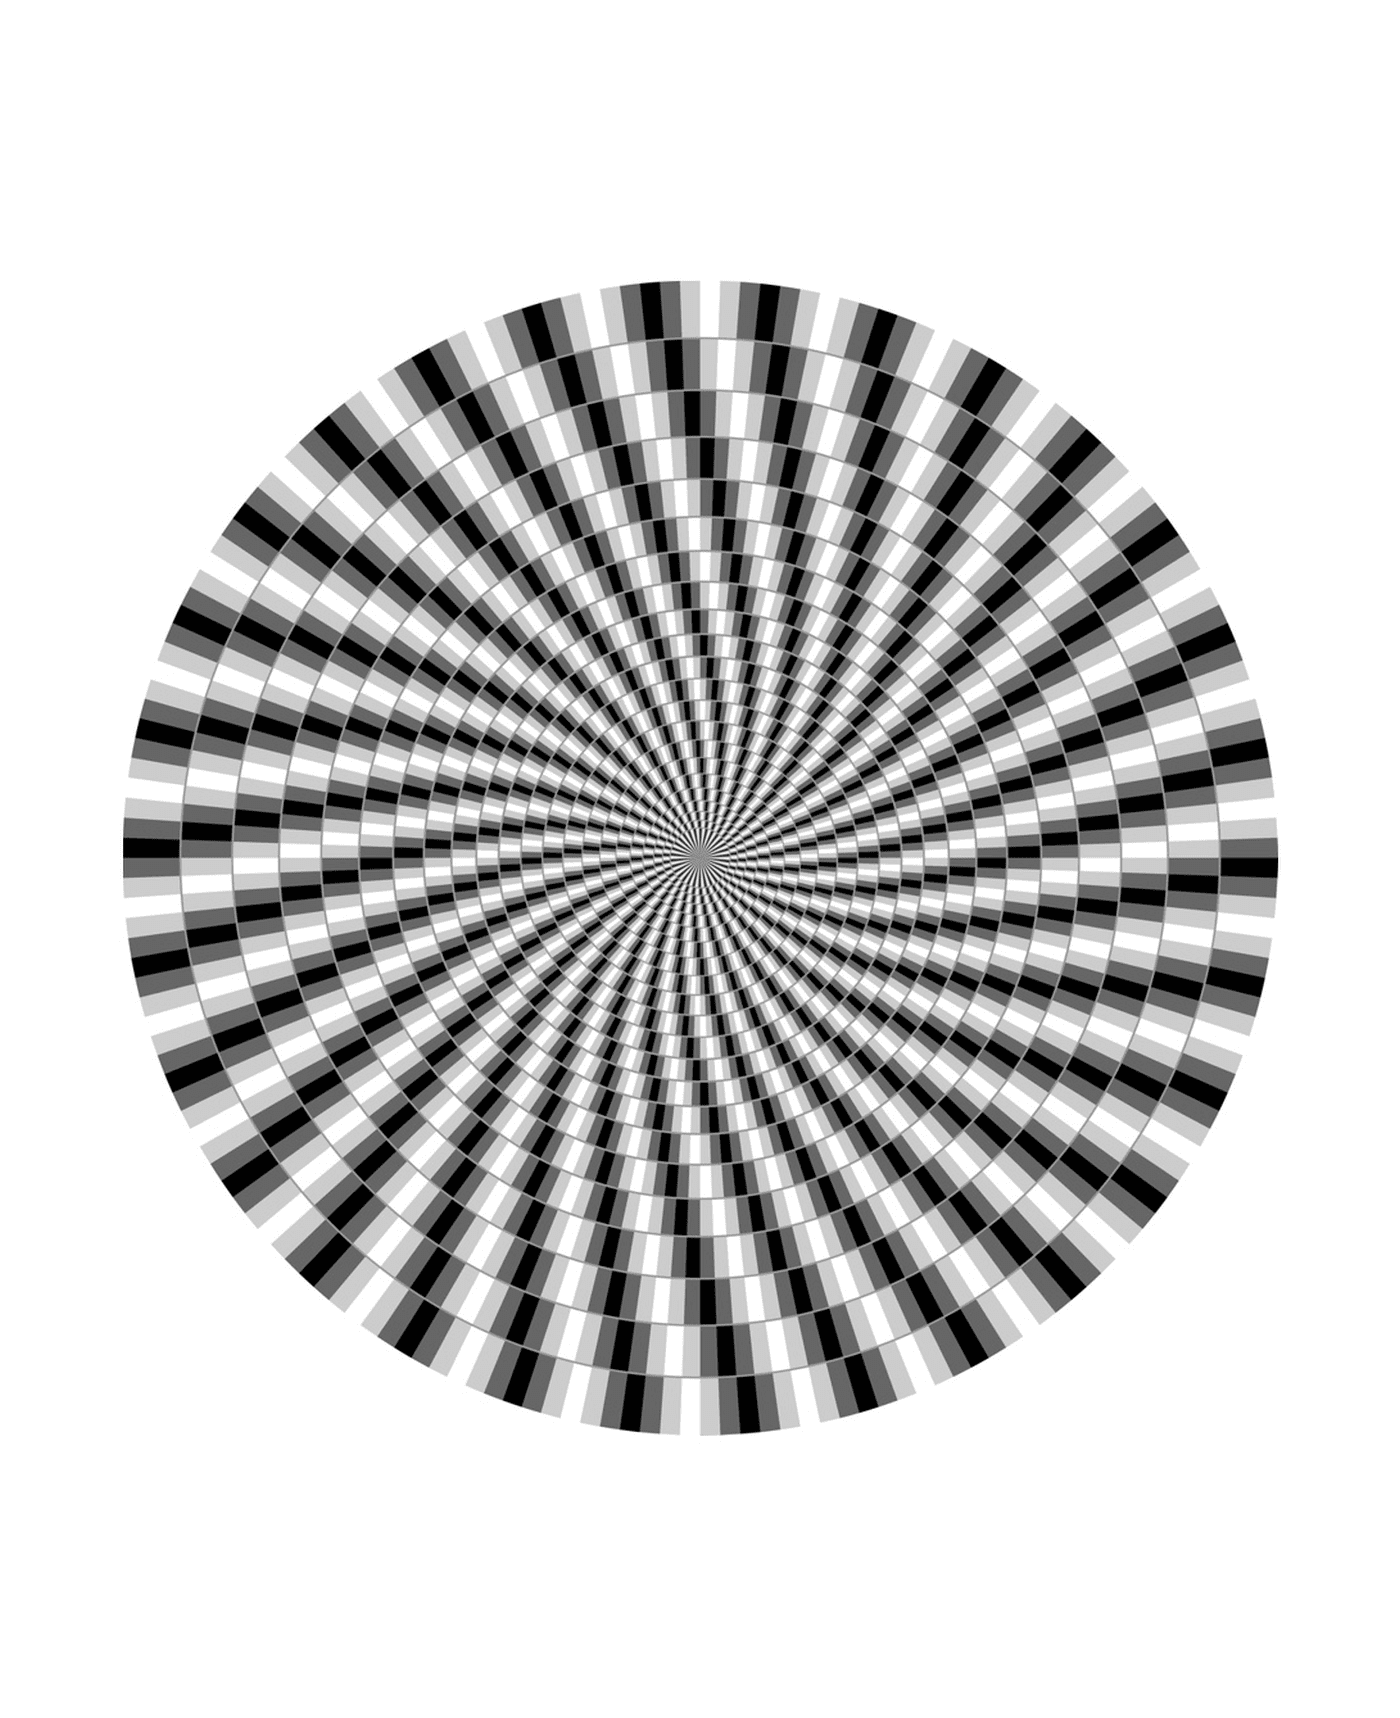  una ilusión óptica 